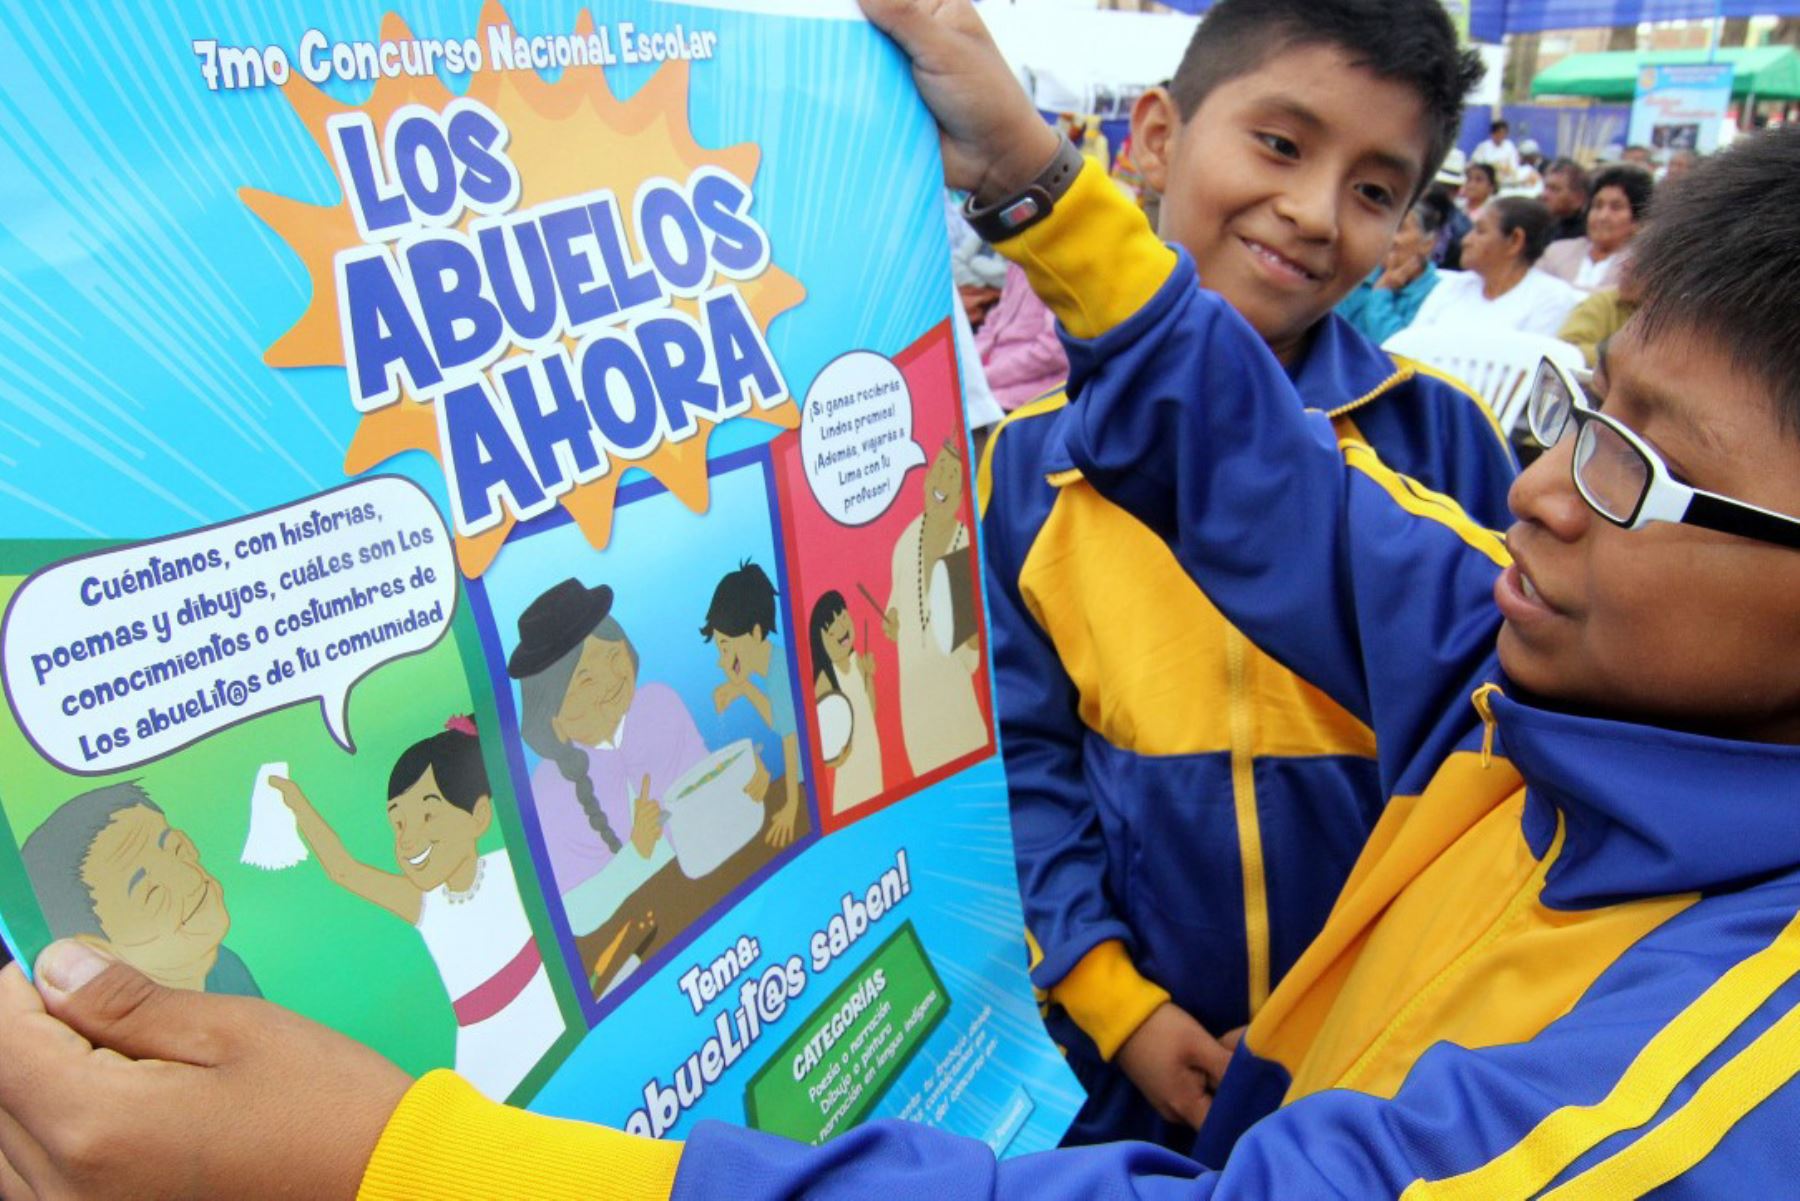 Concurso escolar "Los Abuelos Ahora" bate récord con 179,566 participantes de todo el país